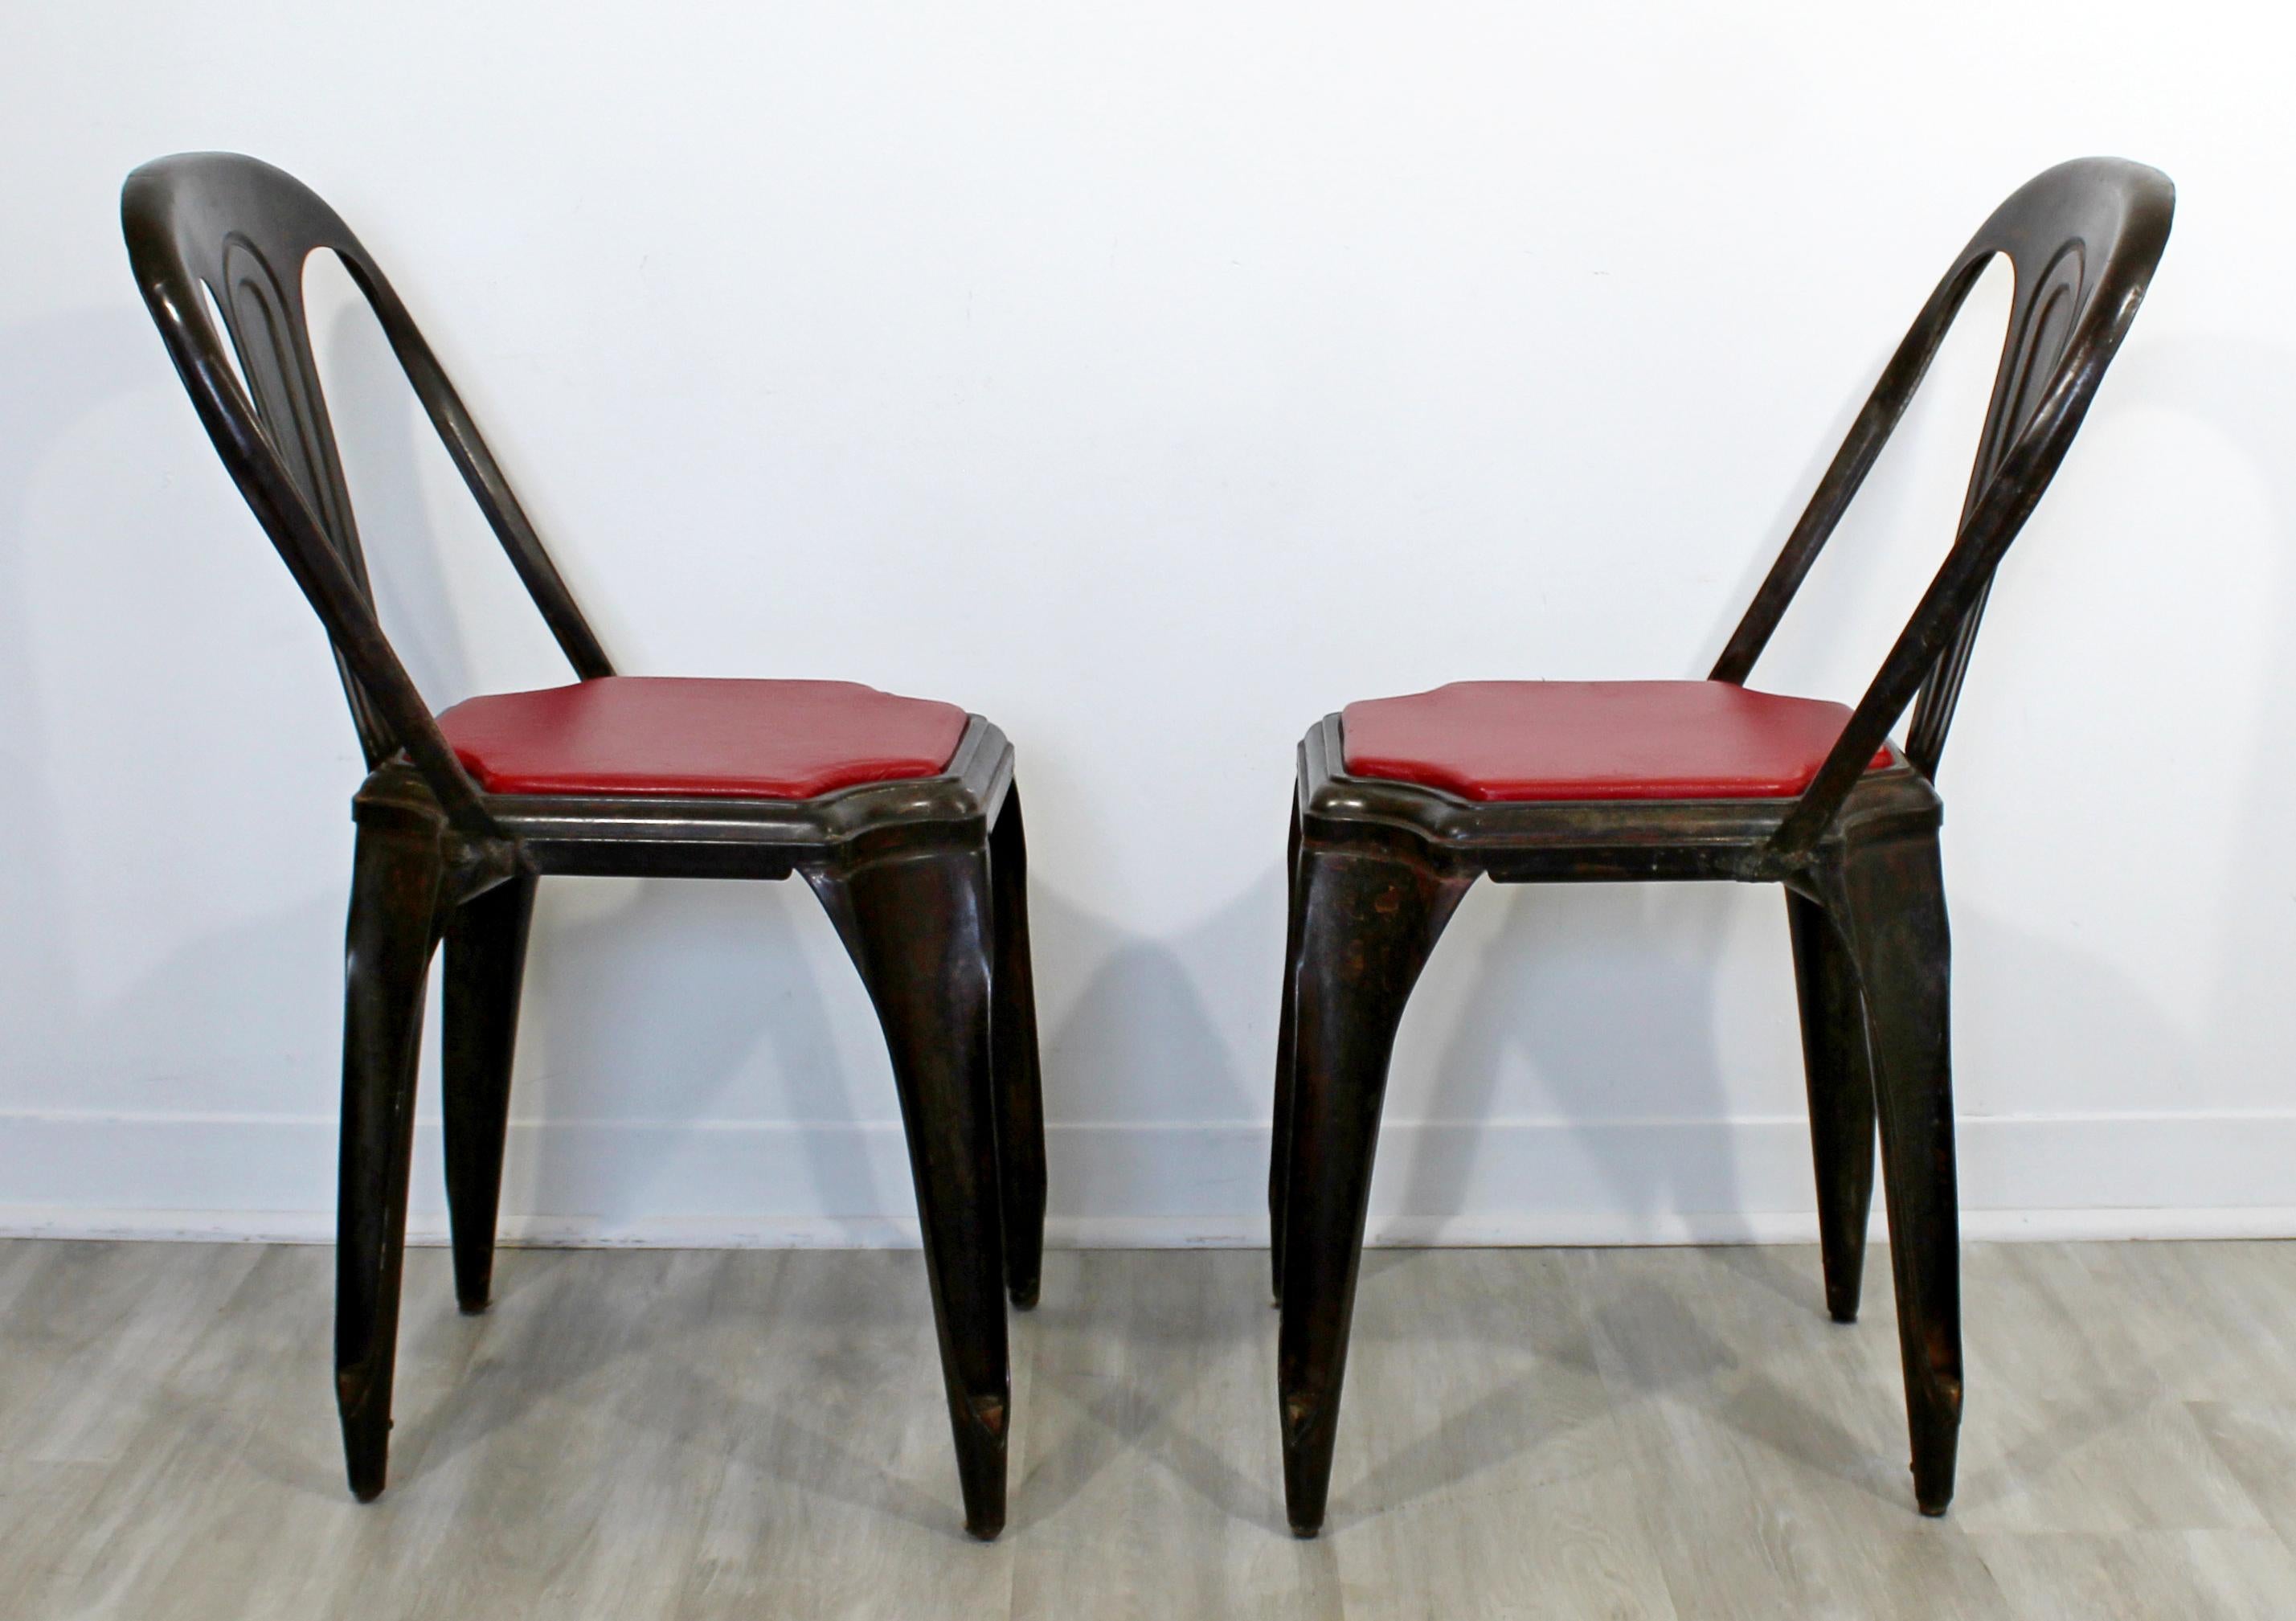 Nous vous proposons une paire de chaises de bistro empilables Fibrocit, fabriquées en France, vers les années 1950. Objet vintage en très bon état. Les dimensions sont les suivantes : 16,5